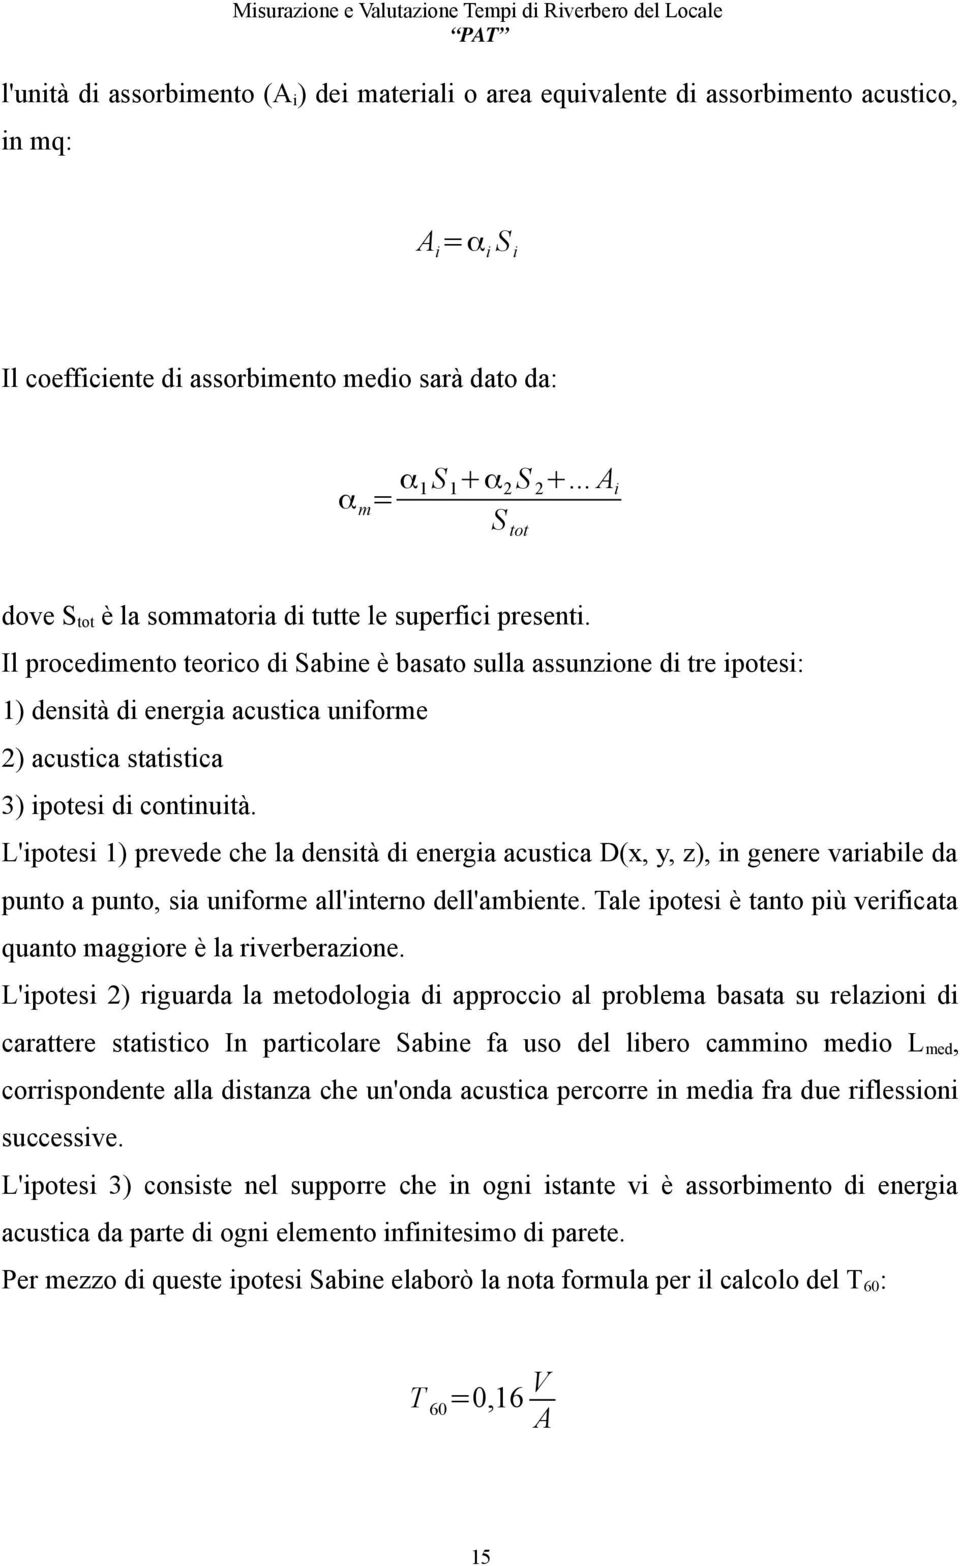 Il procedimento teorico di Sabine è basato sulla assunzione di tre ipotesi: 1) densità di energia acustica uniforme 2) acustica statistica 3) ipotesi di continuità.